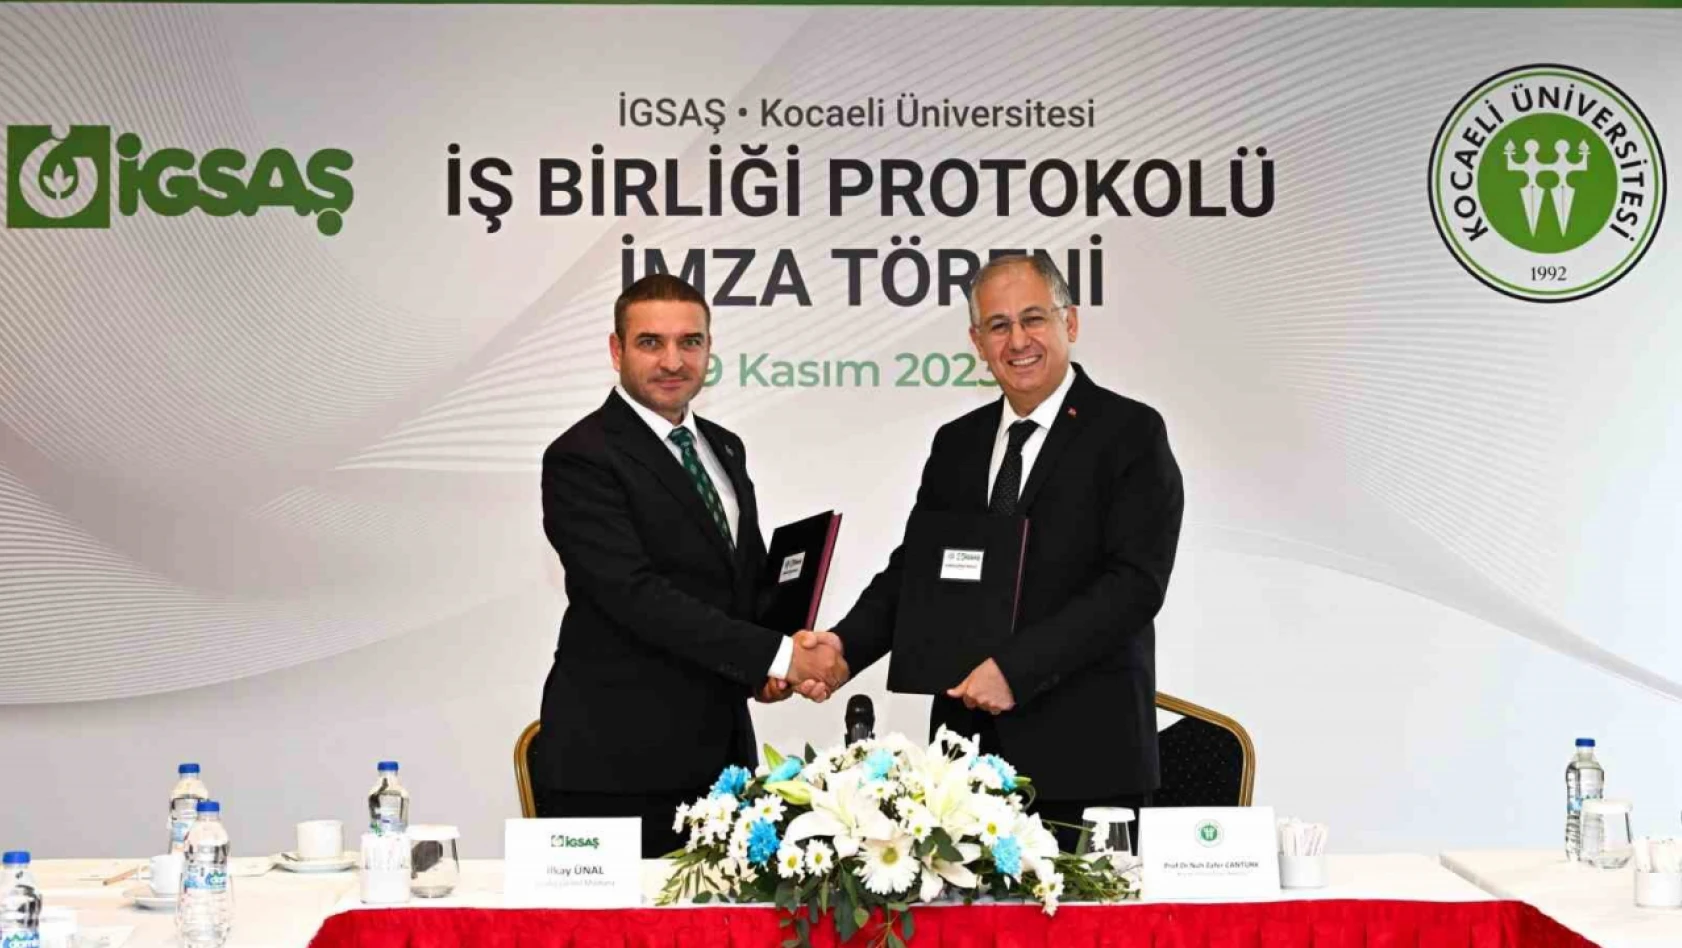 İGSAŞ, Kocaeli Üniversitesi ile iş birliği protokolü imzaladı